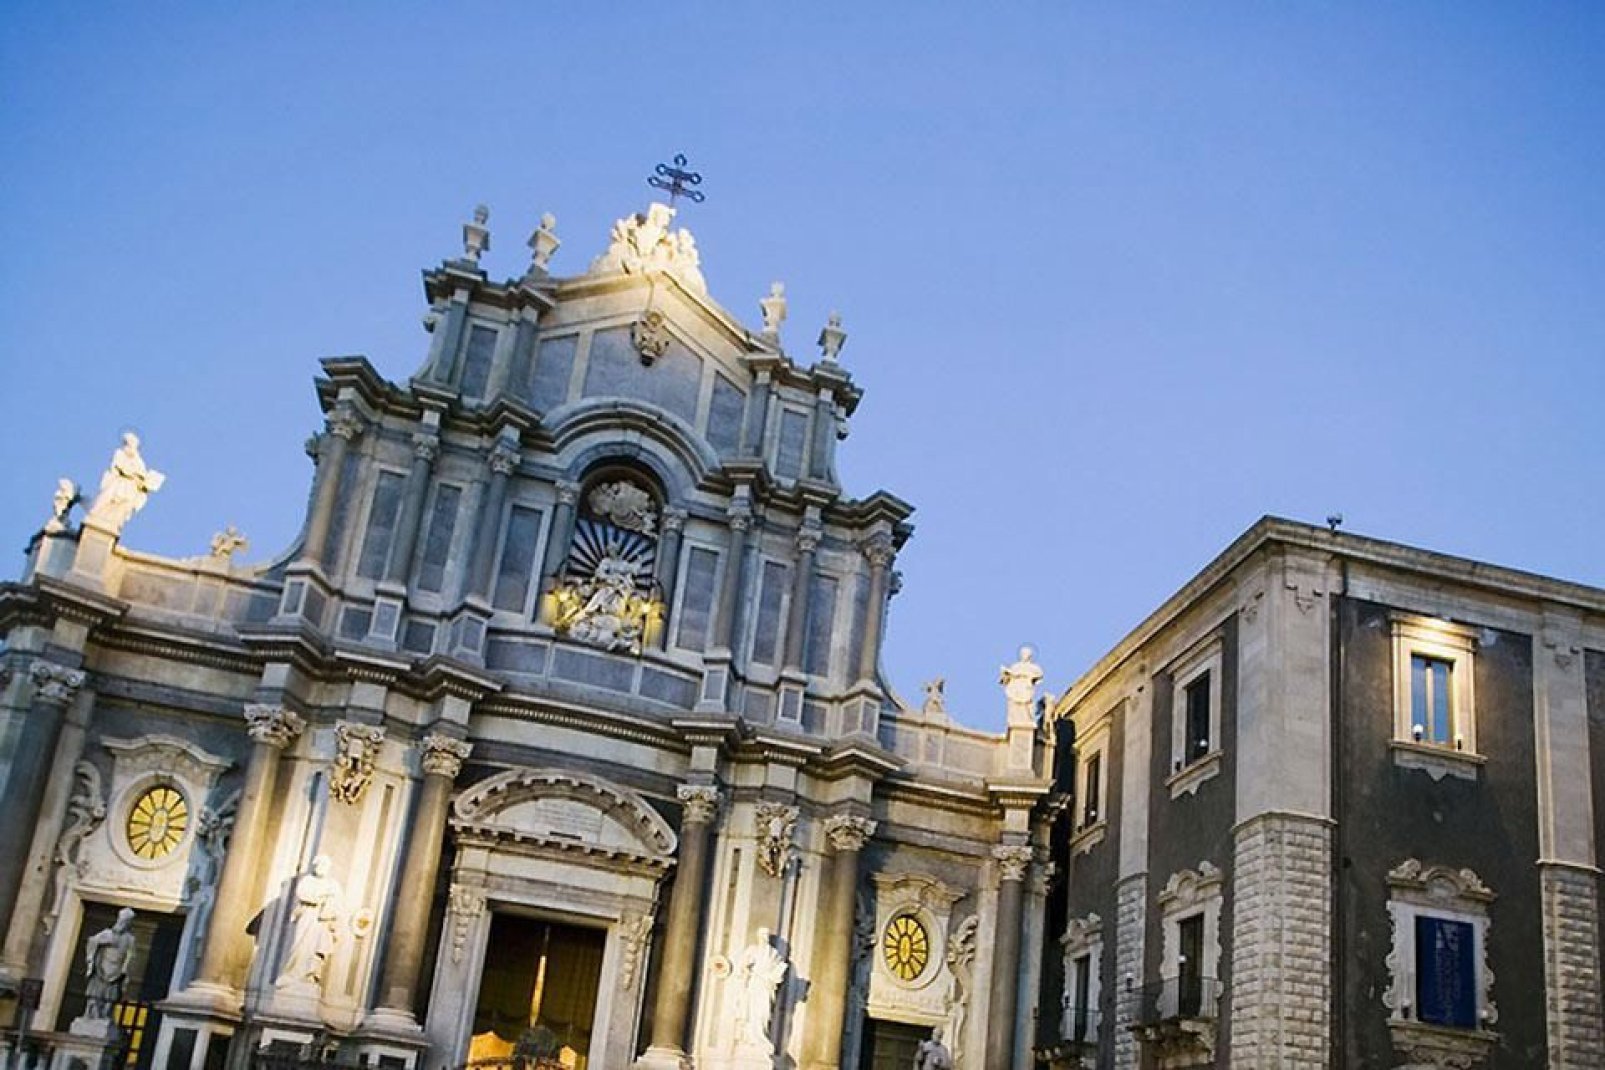 La catedral de Catania está dedicada a Santa Ágata, la santa, virgen y mártir, patrona de la ciudad de Catania.